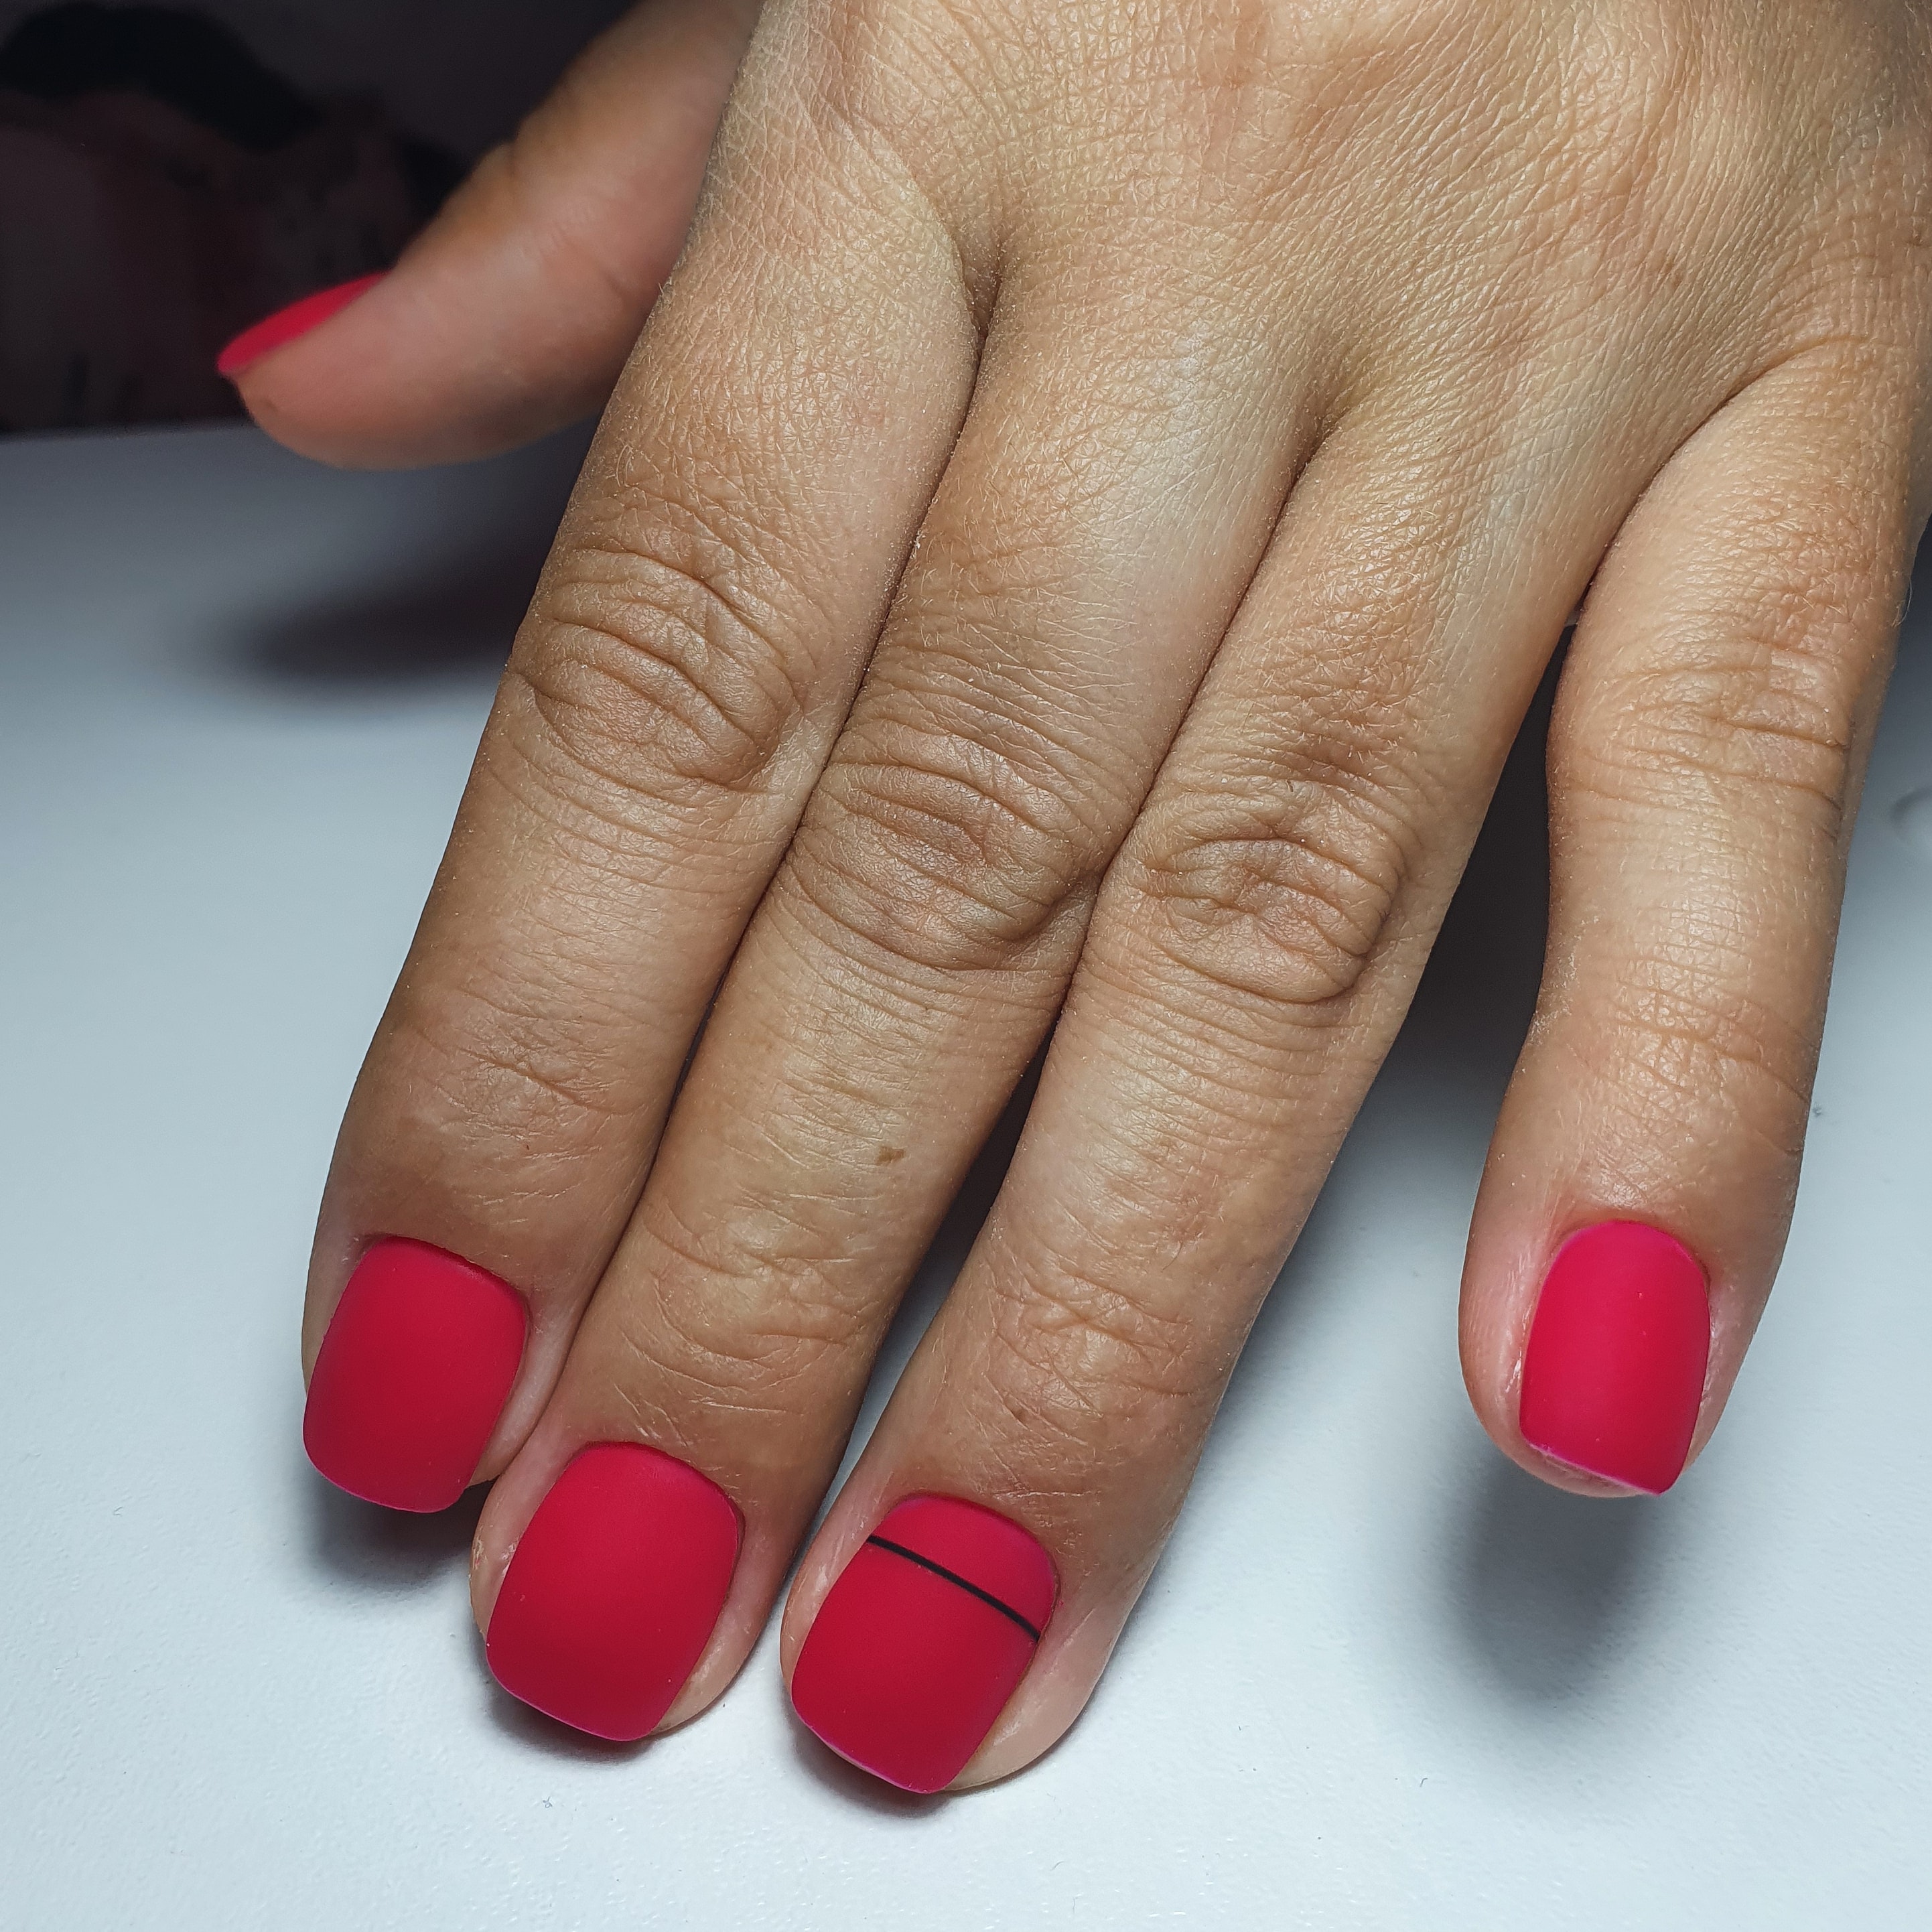 Матовый маникюр с полосками в красном цвете на короткие ногти.